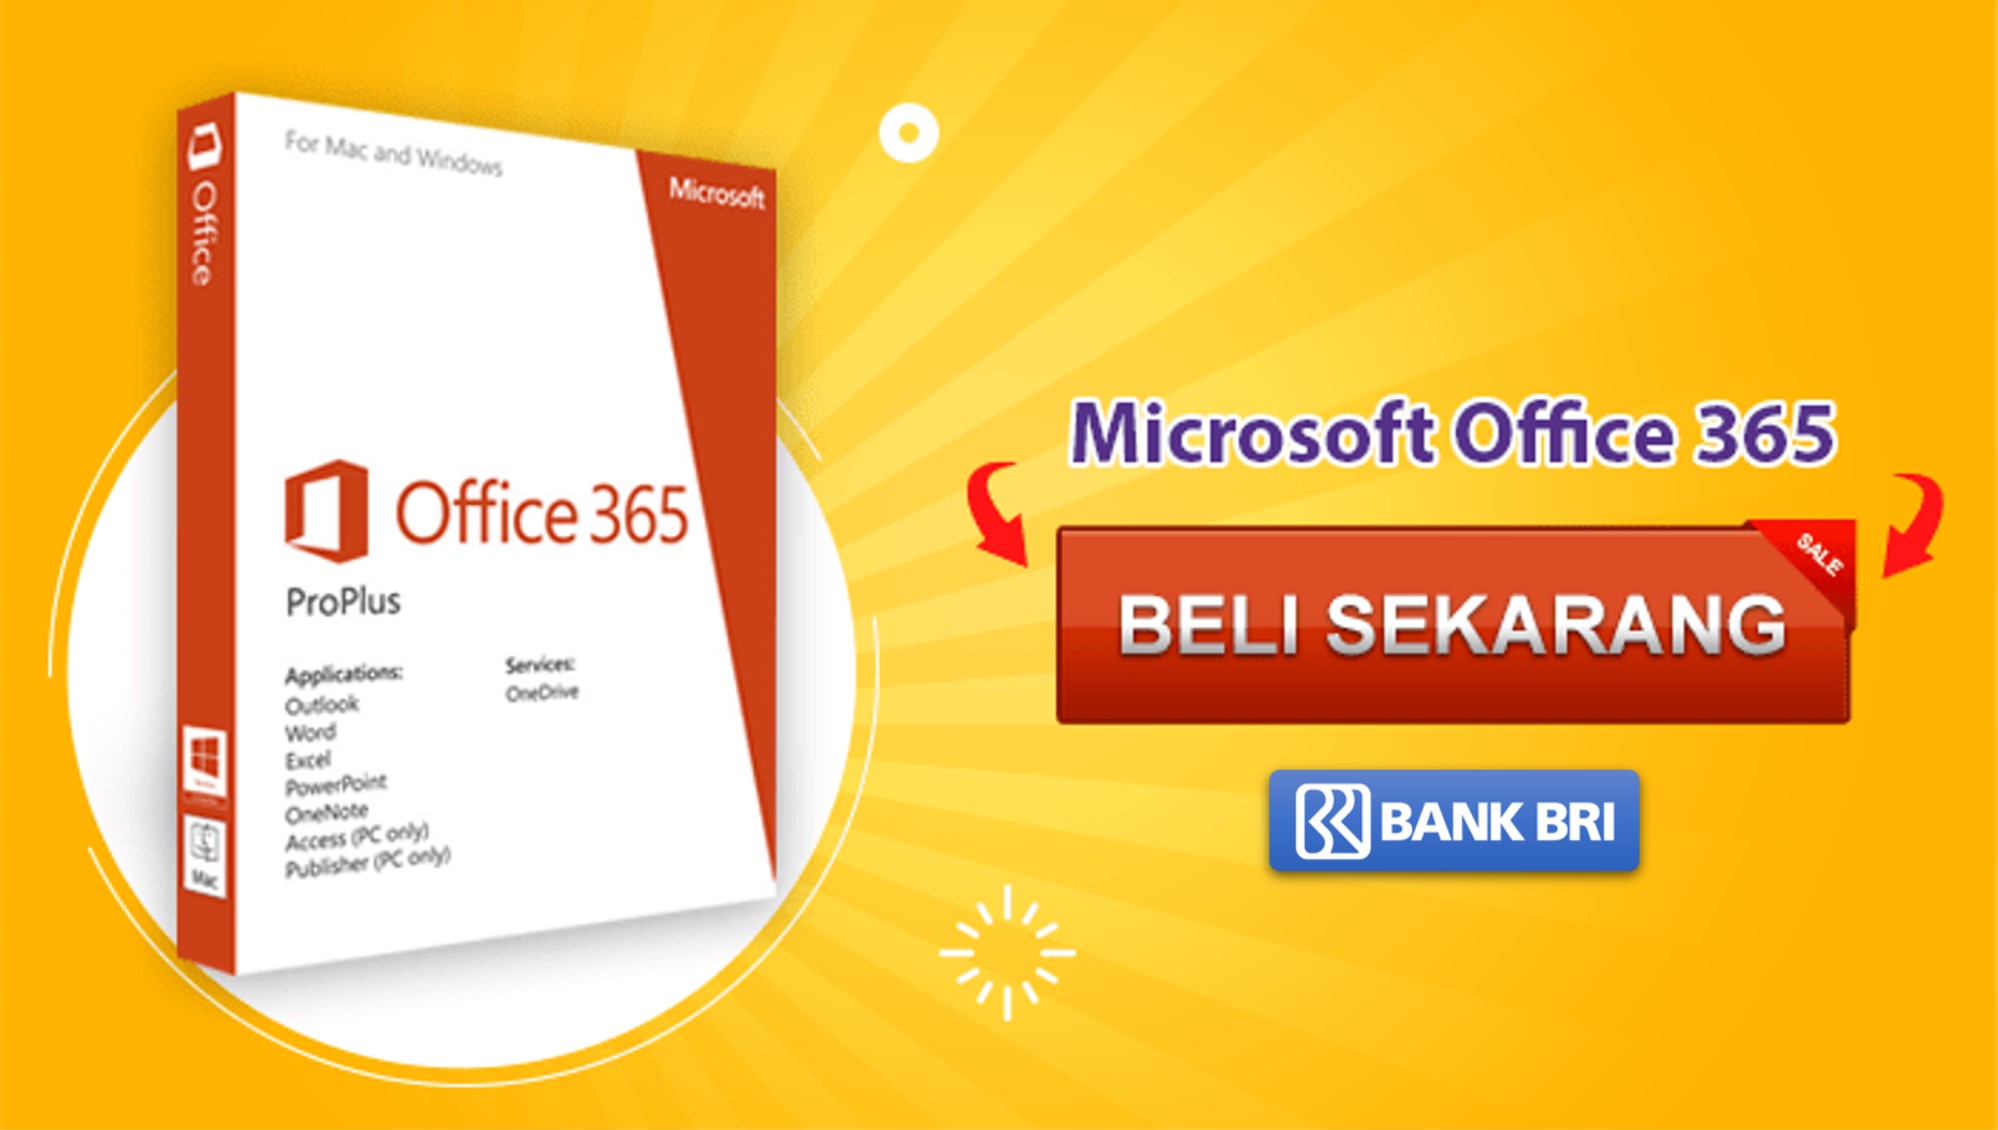 Office 365 купить.